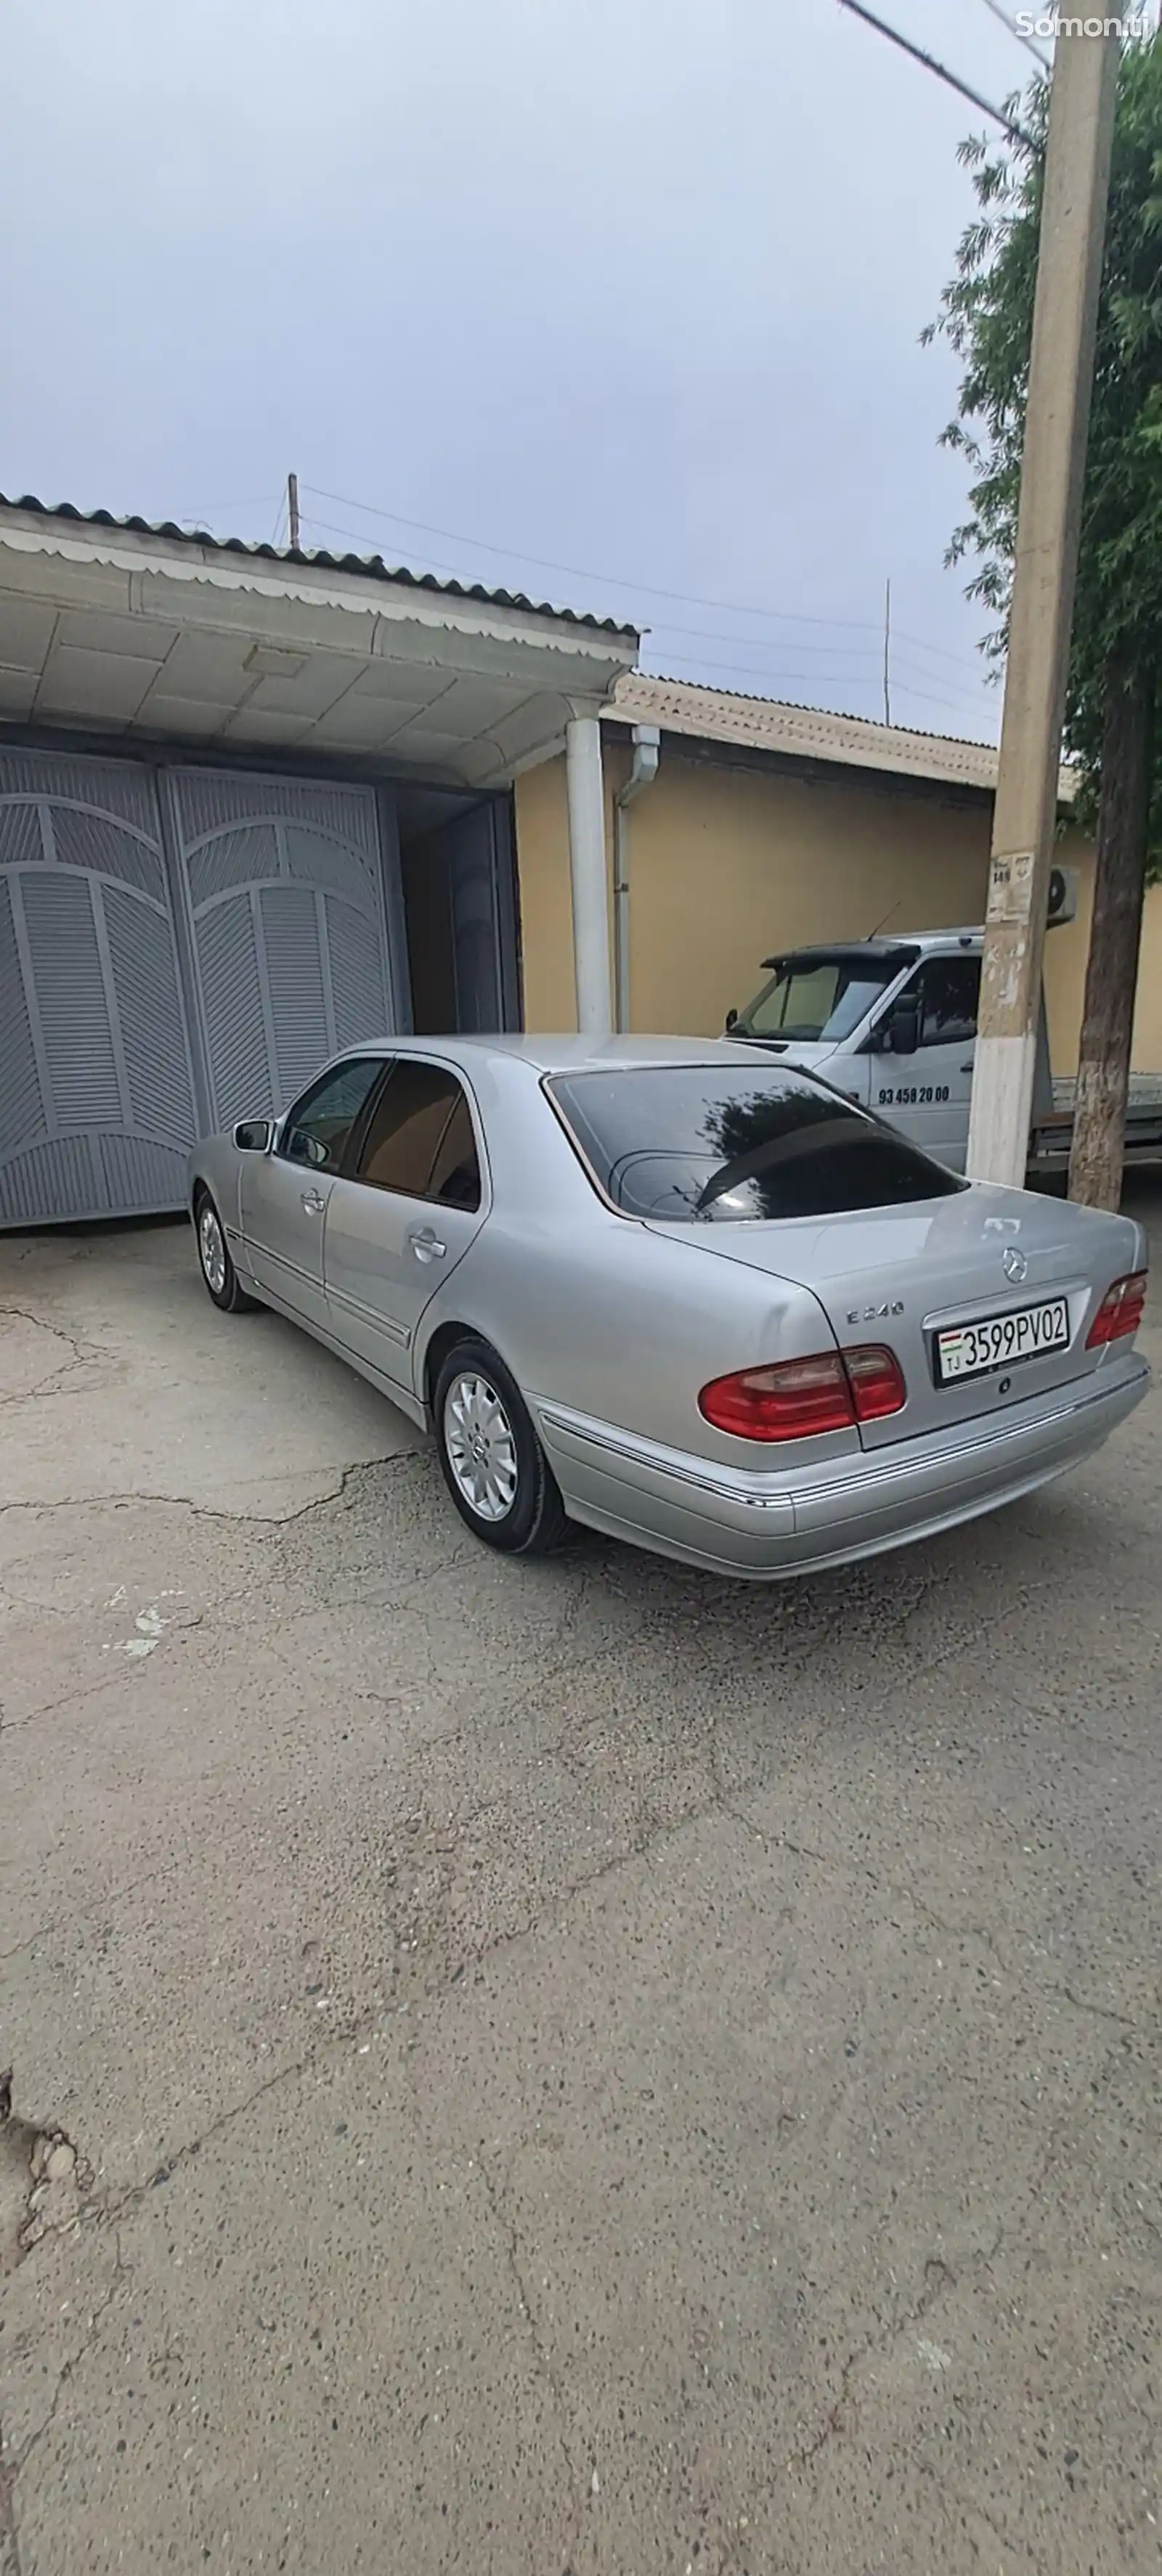 Mercedes-Benz E class, 2001-2